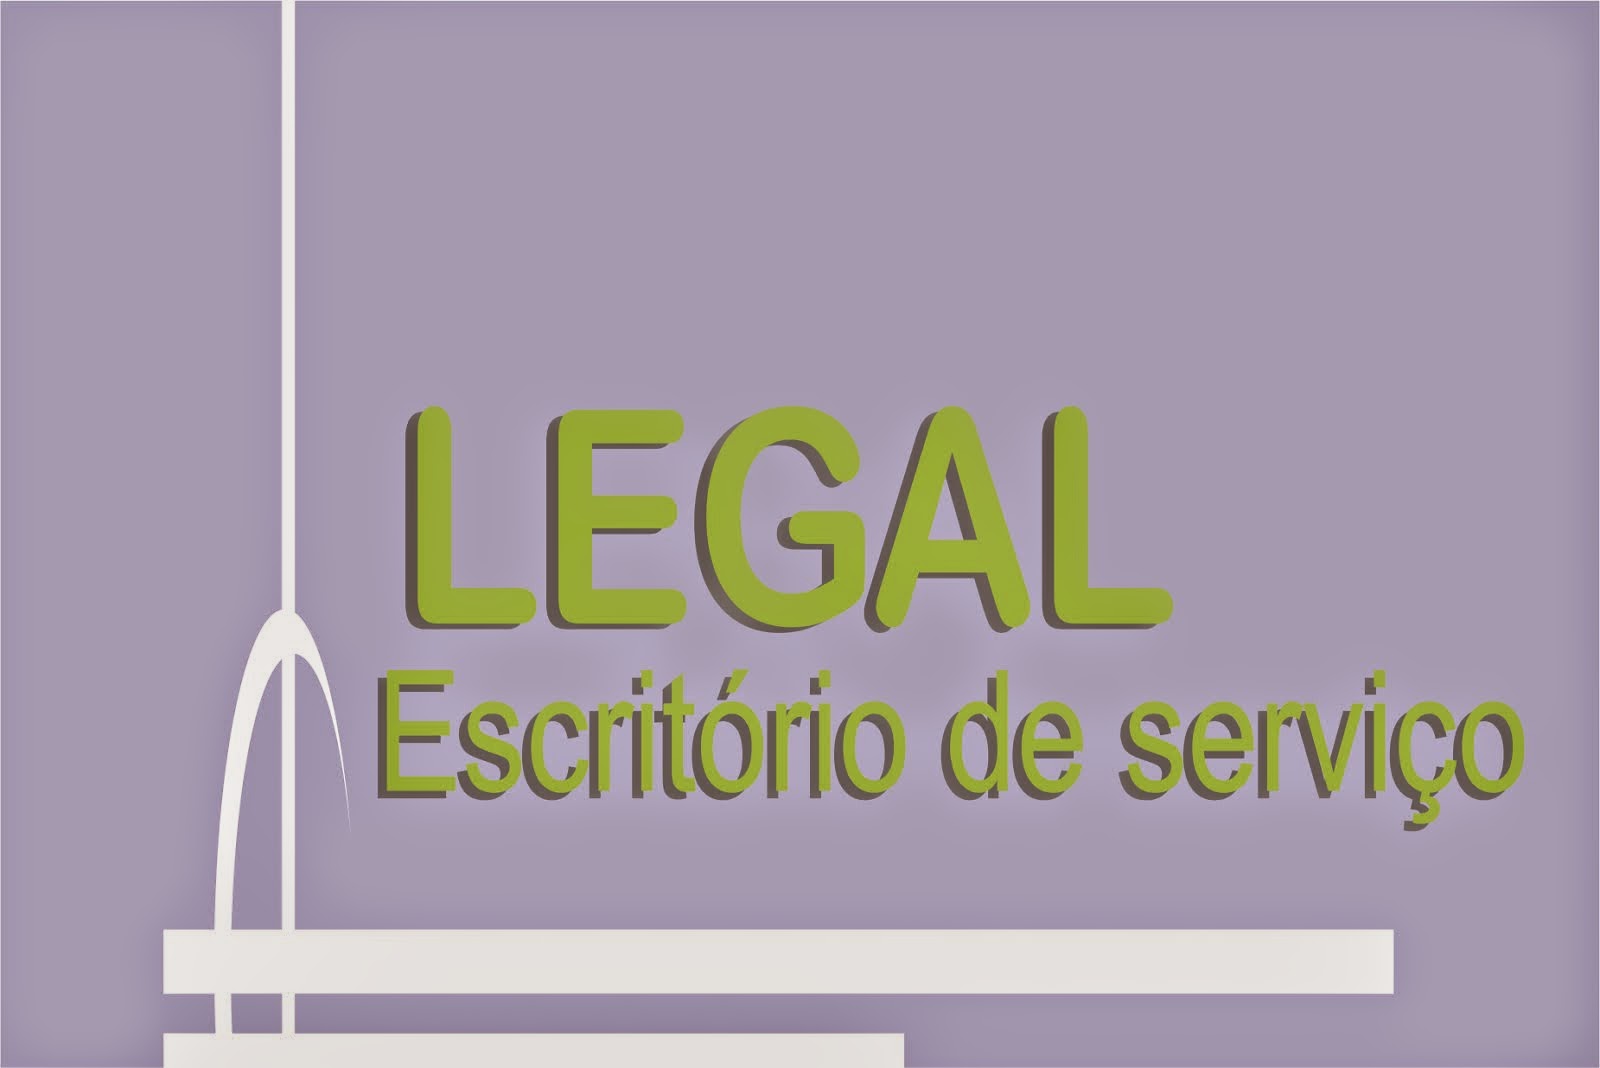 LEGAL ESCRITÓRIO DE SERVIÇO